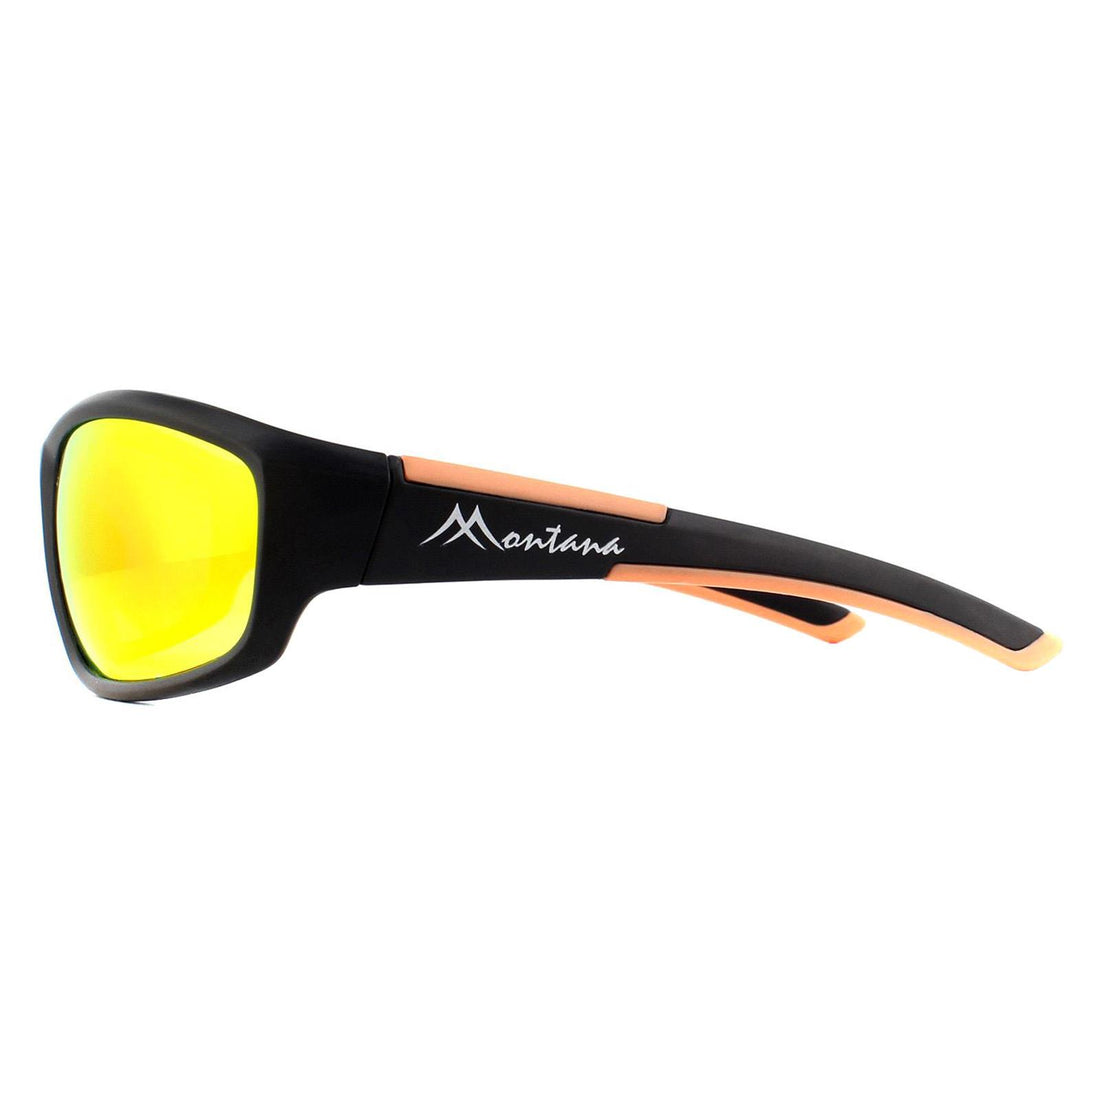 Montana SP311 Sunglasses